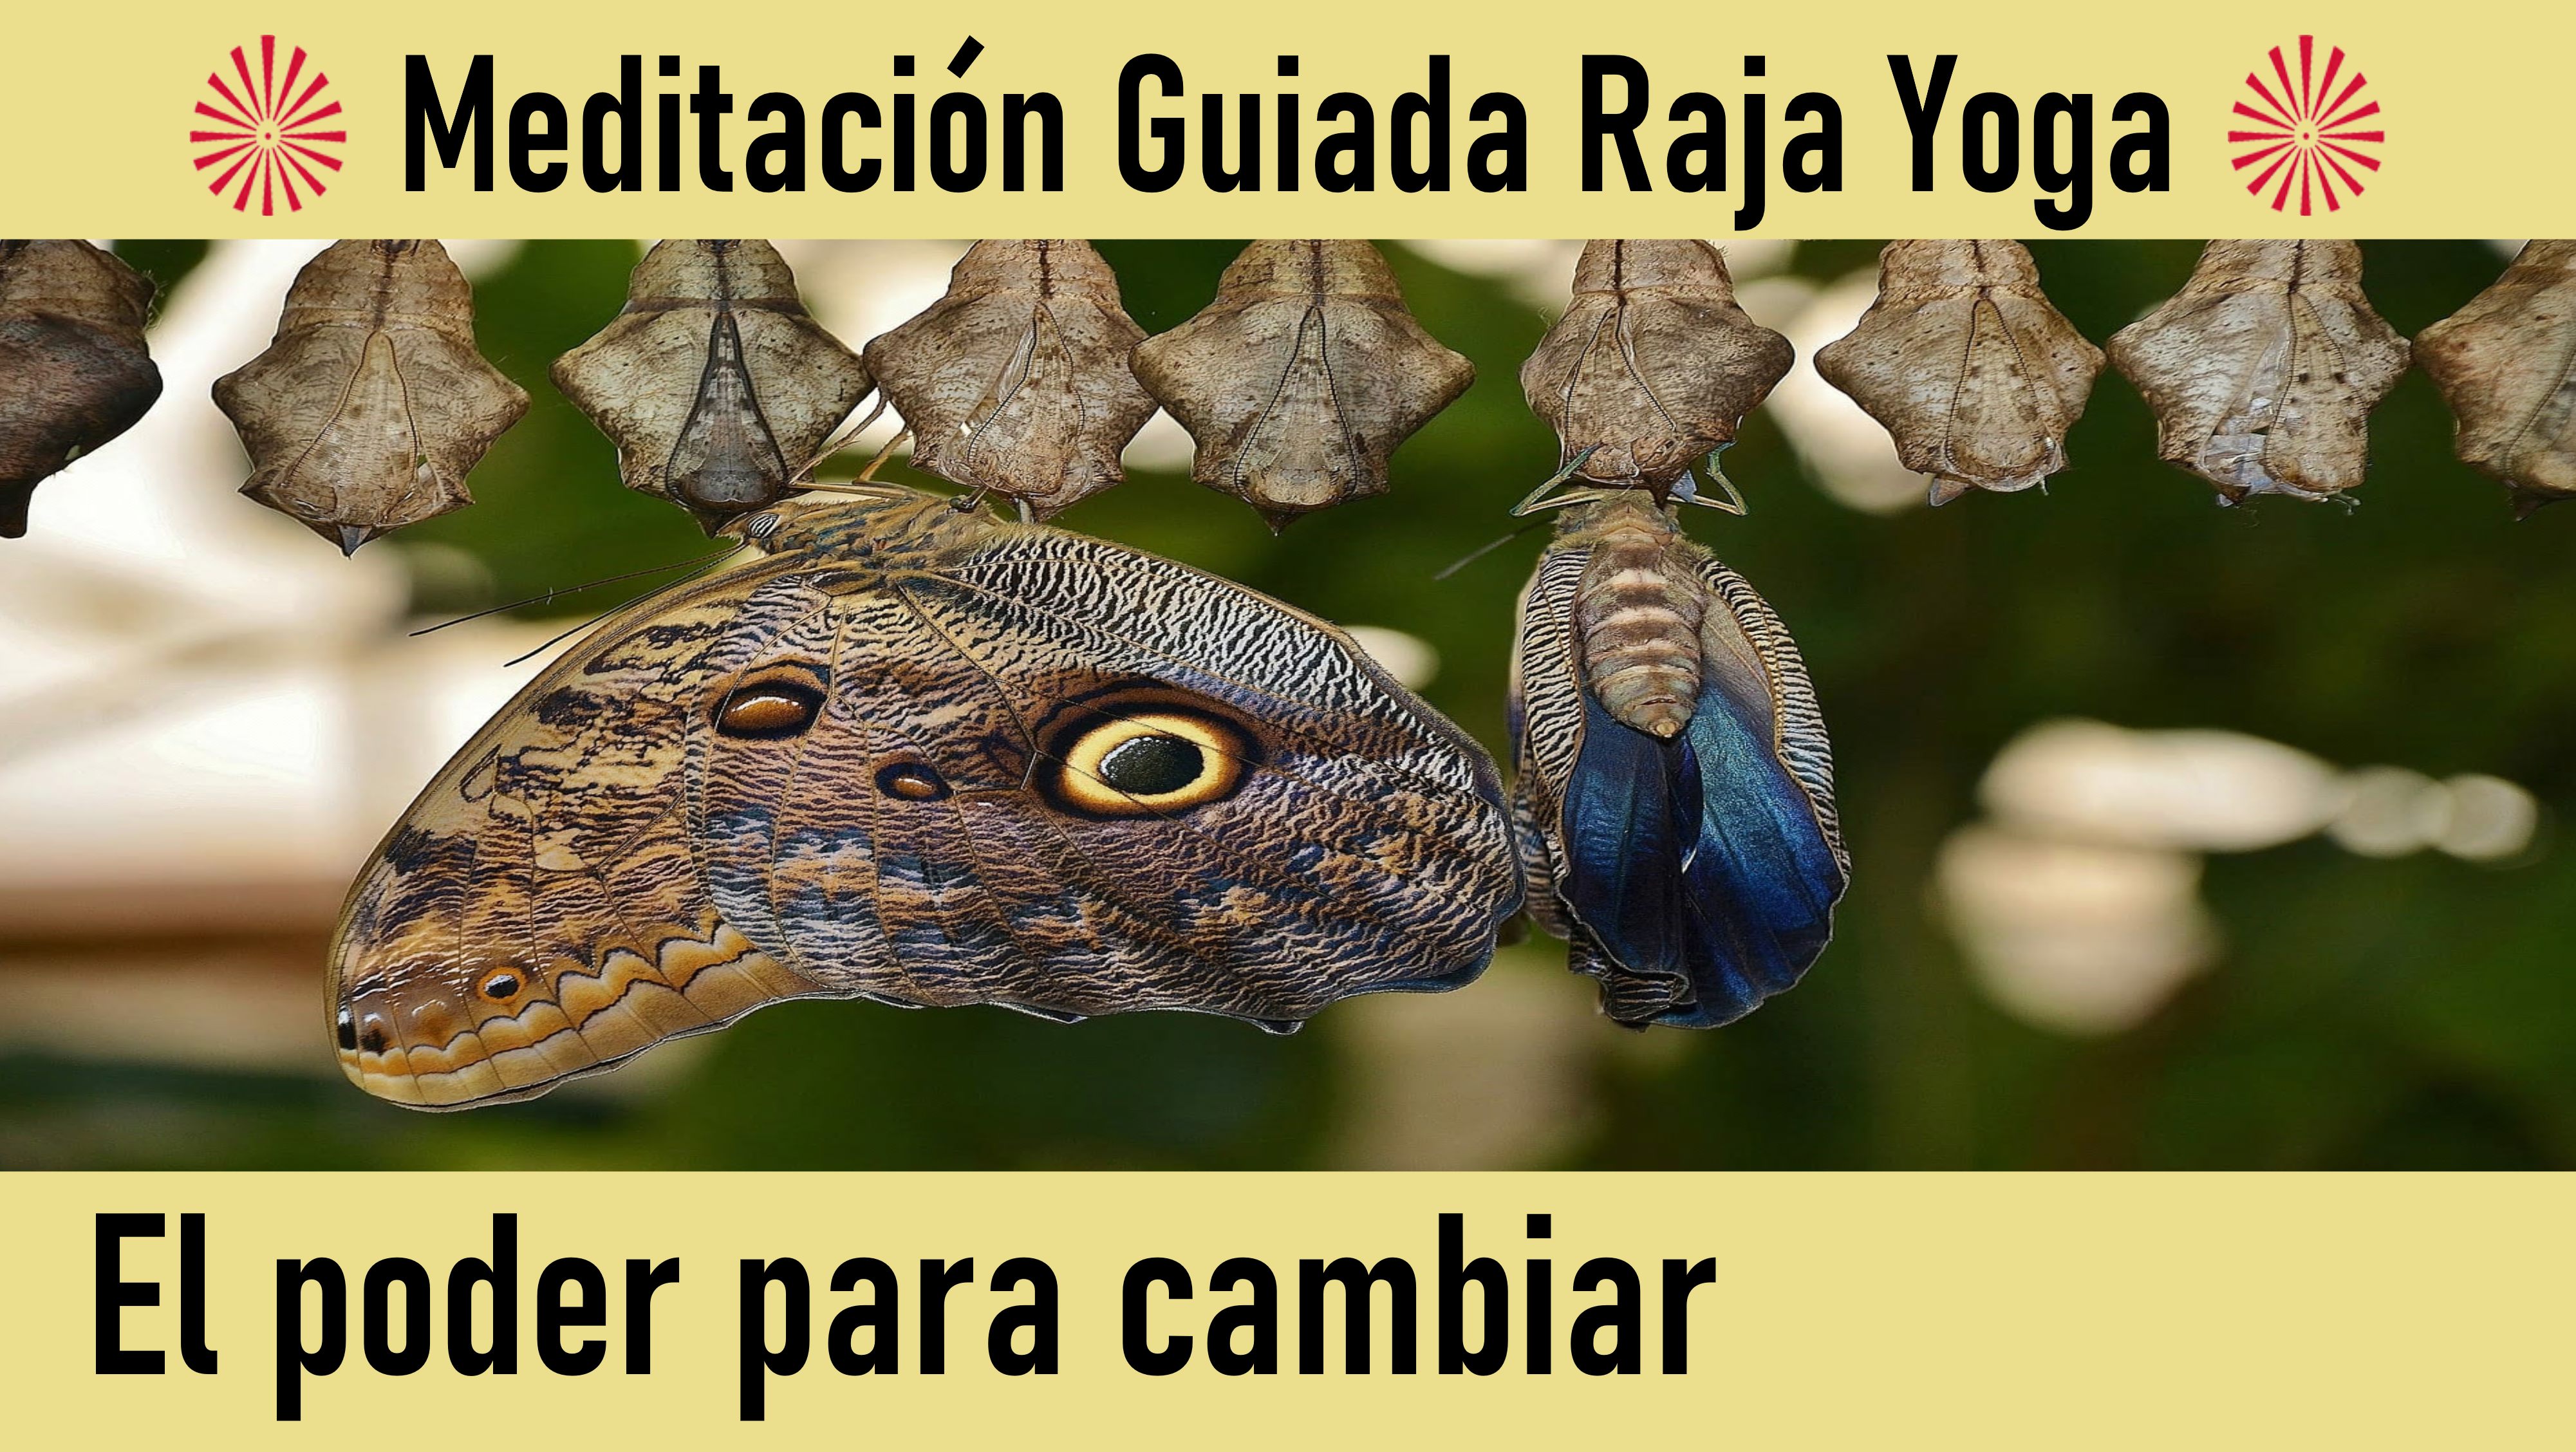 Meditación Raja Yoga: El poder para cambiar (2 Junio 2020) On-line desde Canarias